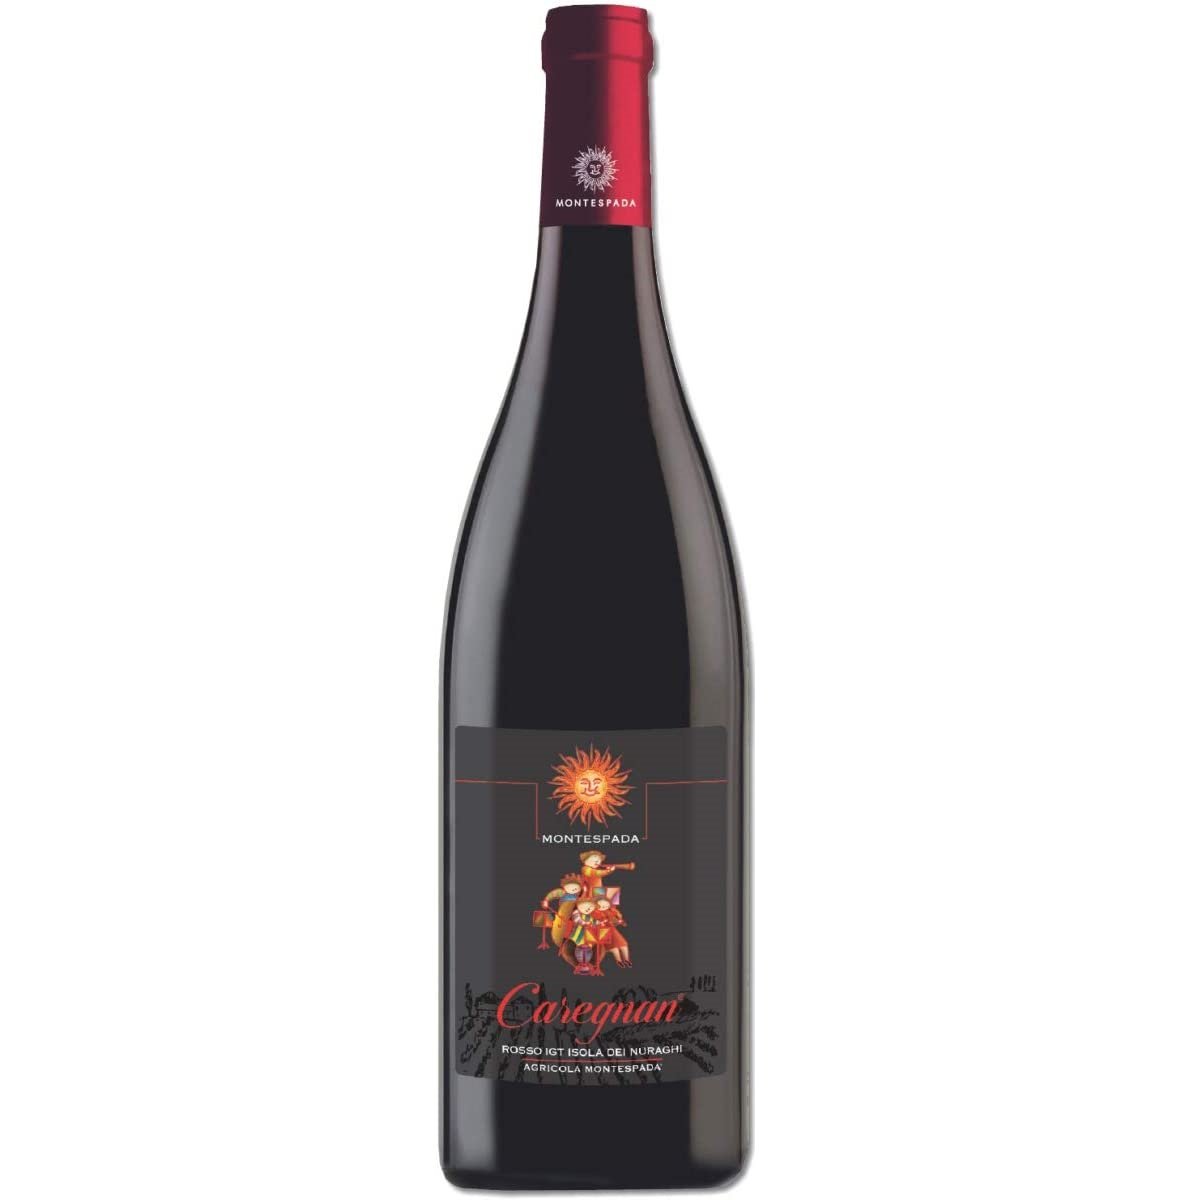 Вино Montespada Caregnan IGT 2016, червоне, сухе, 13%, 0,75 л - фото 1